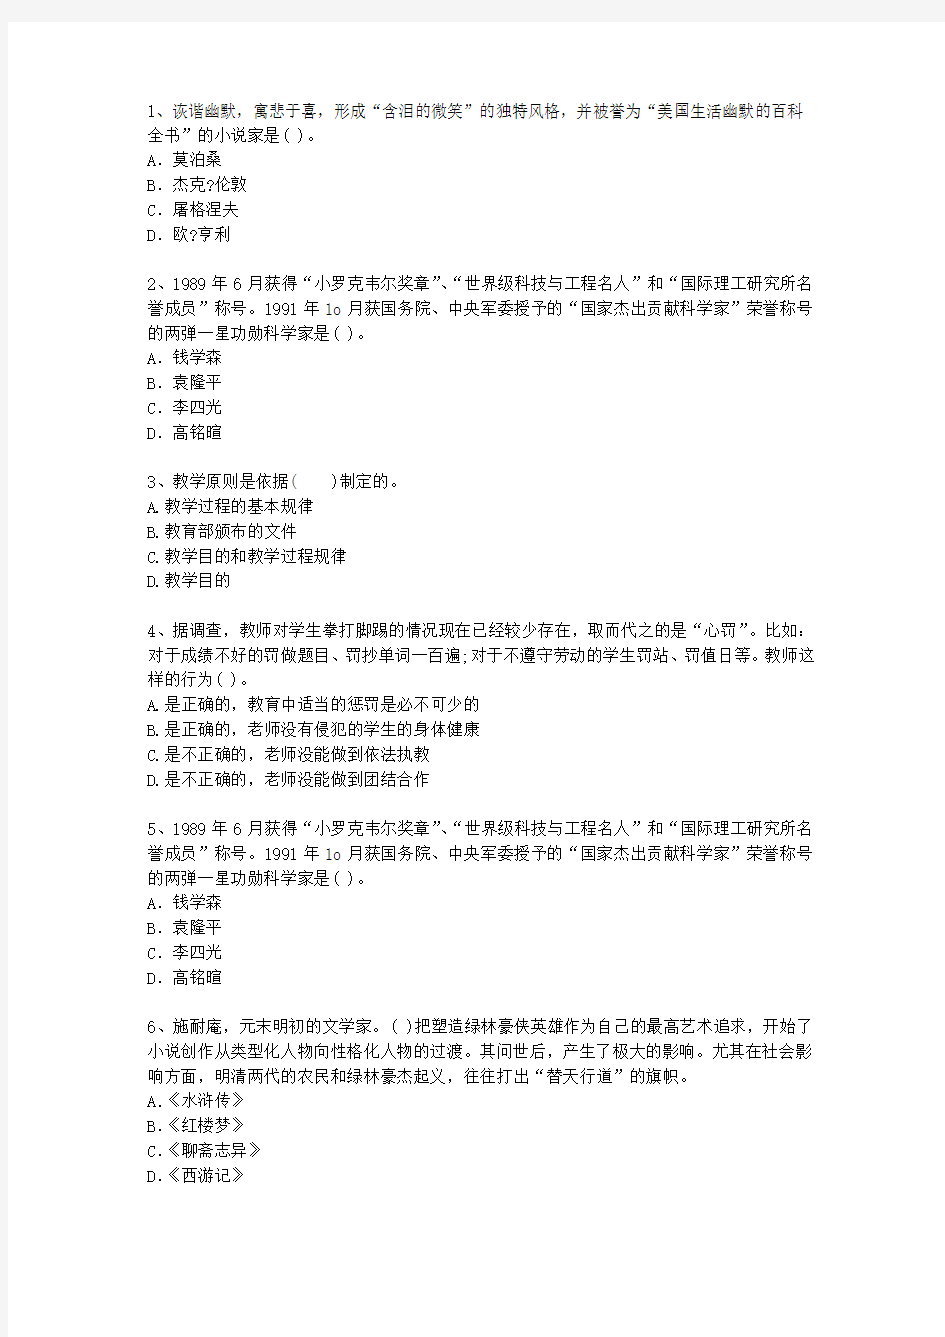 2015江苏省教师资格证考试《综合素质》考试技巧重点